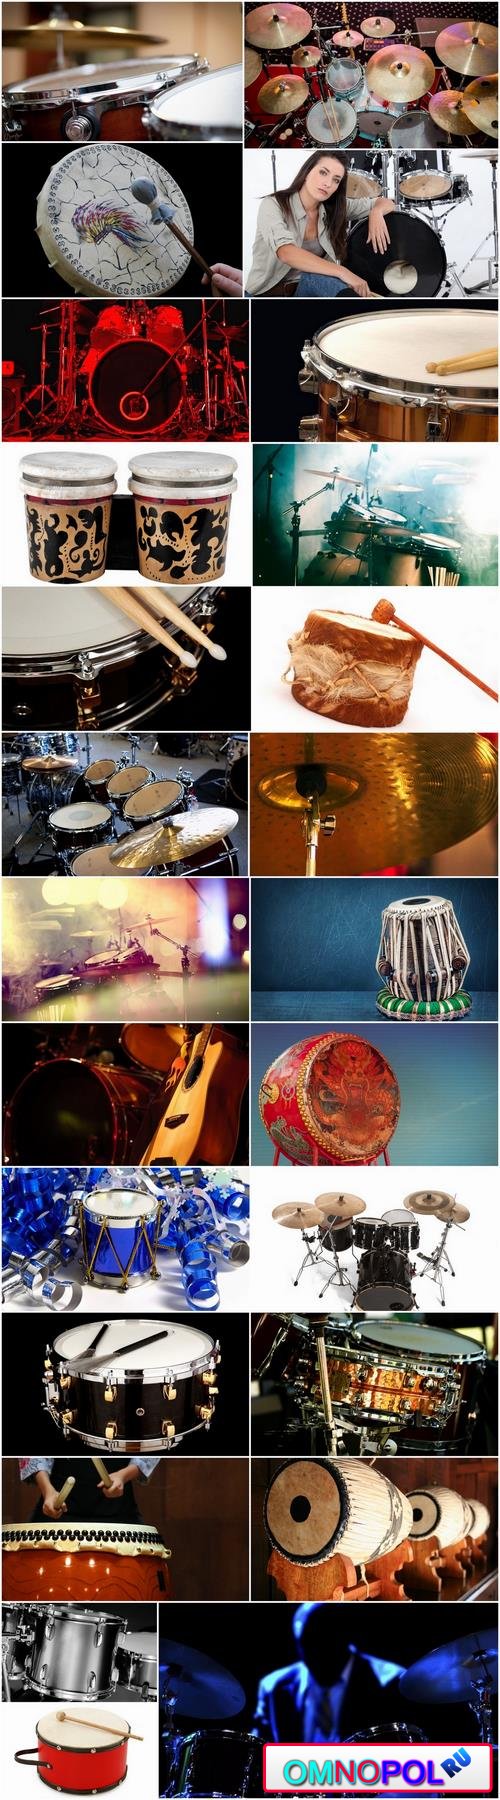 Musical instrument drum drummer stick 25 HQ Jpeg